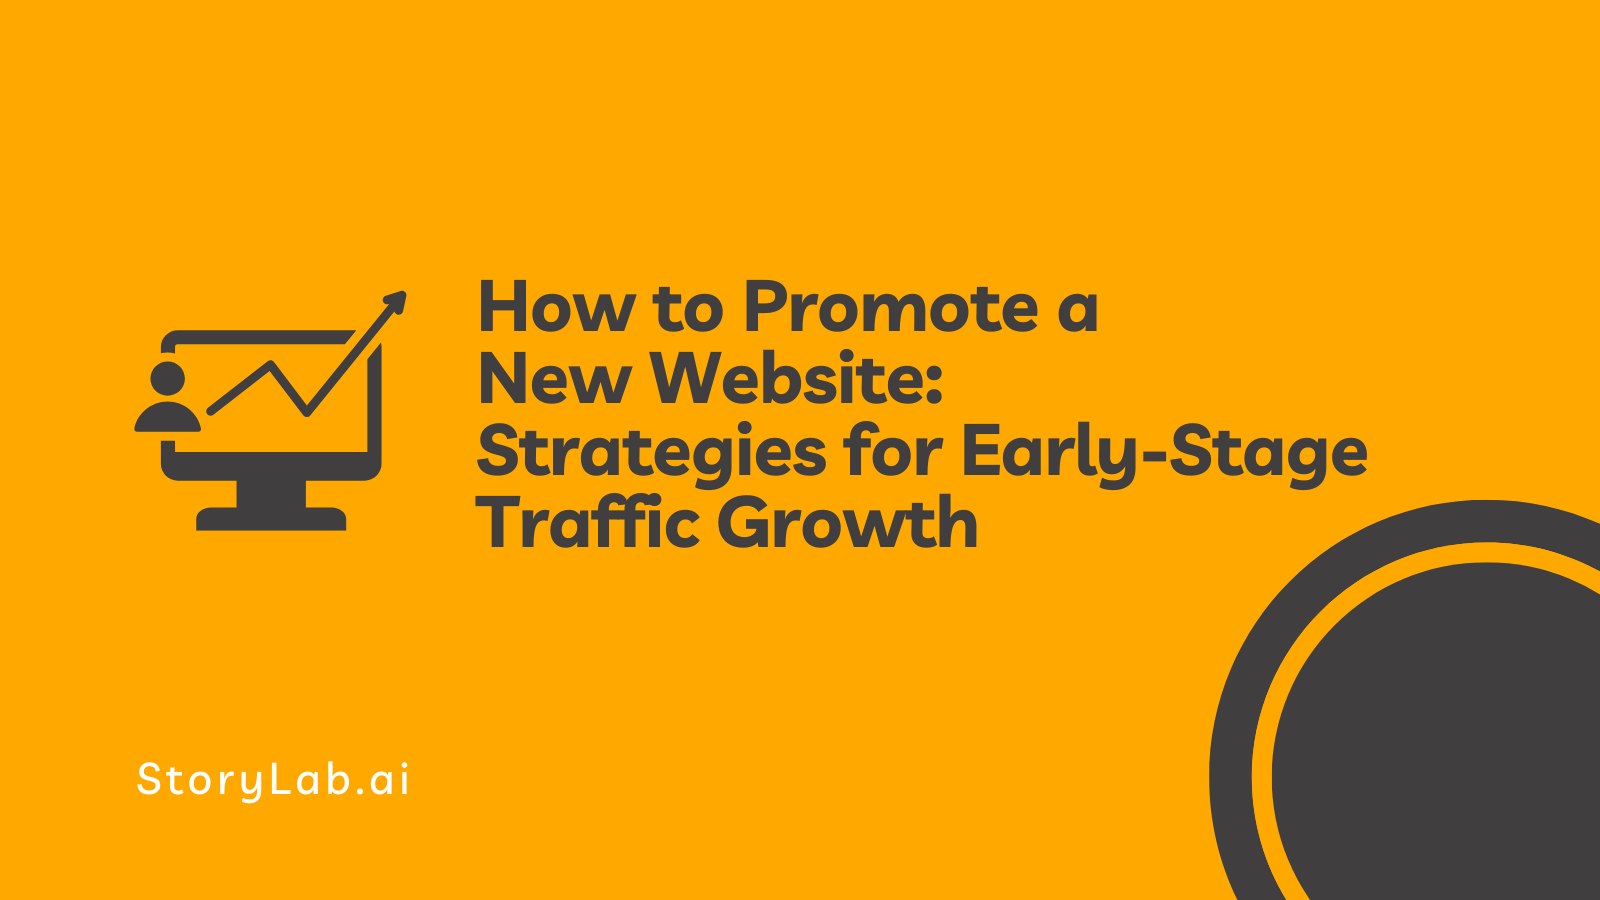 Cómo promover estrategias de un nuevo sitio web para el crecimiento del tráfico en las primeras etapas